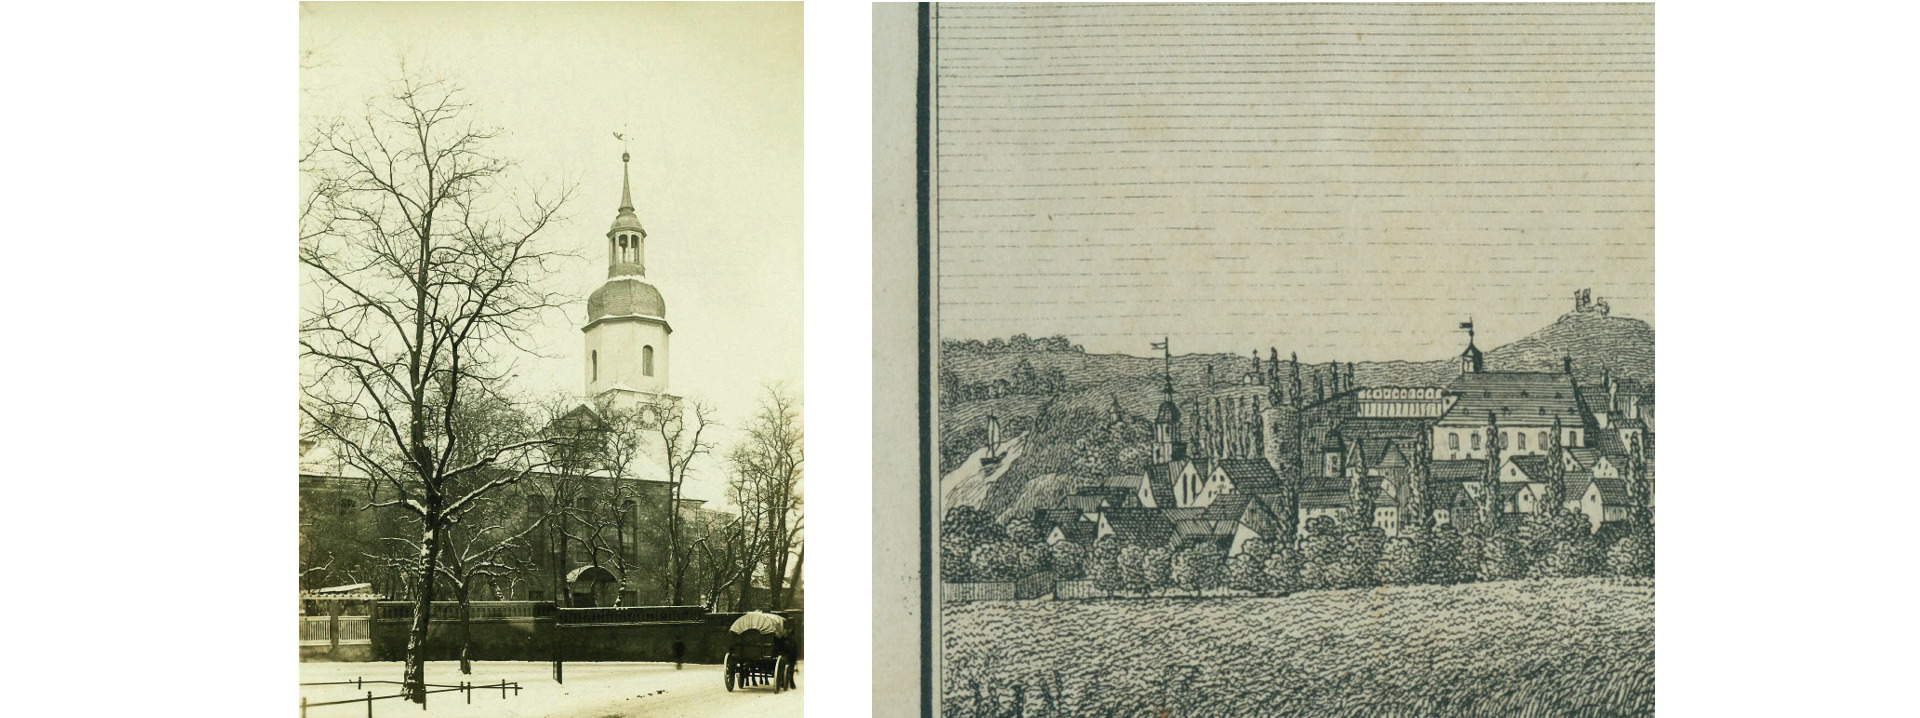 Glaucha von Süden, Ausschnitt aus einem Kupferstich, ca. 1820 und St. Georgen, Foto, um 1900 (Stadtarchiv Halle)